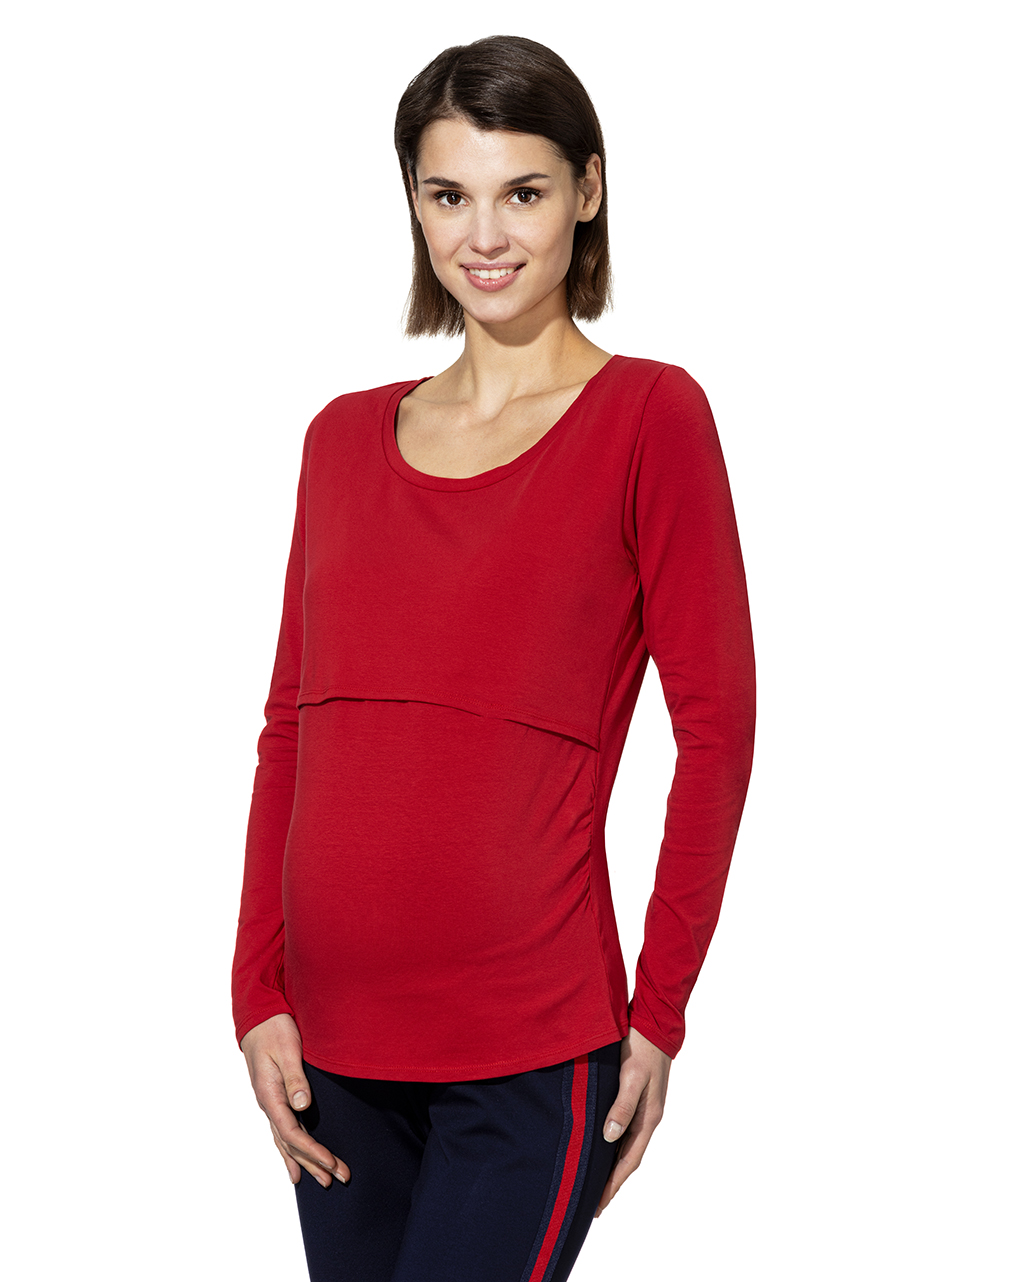 γυναικεία μπλούζα εγκυμοσύνης/θηλασμού κόκκινη - Prénatal